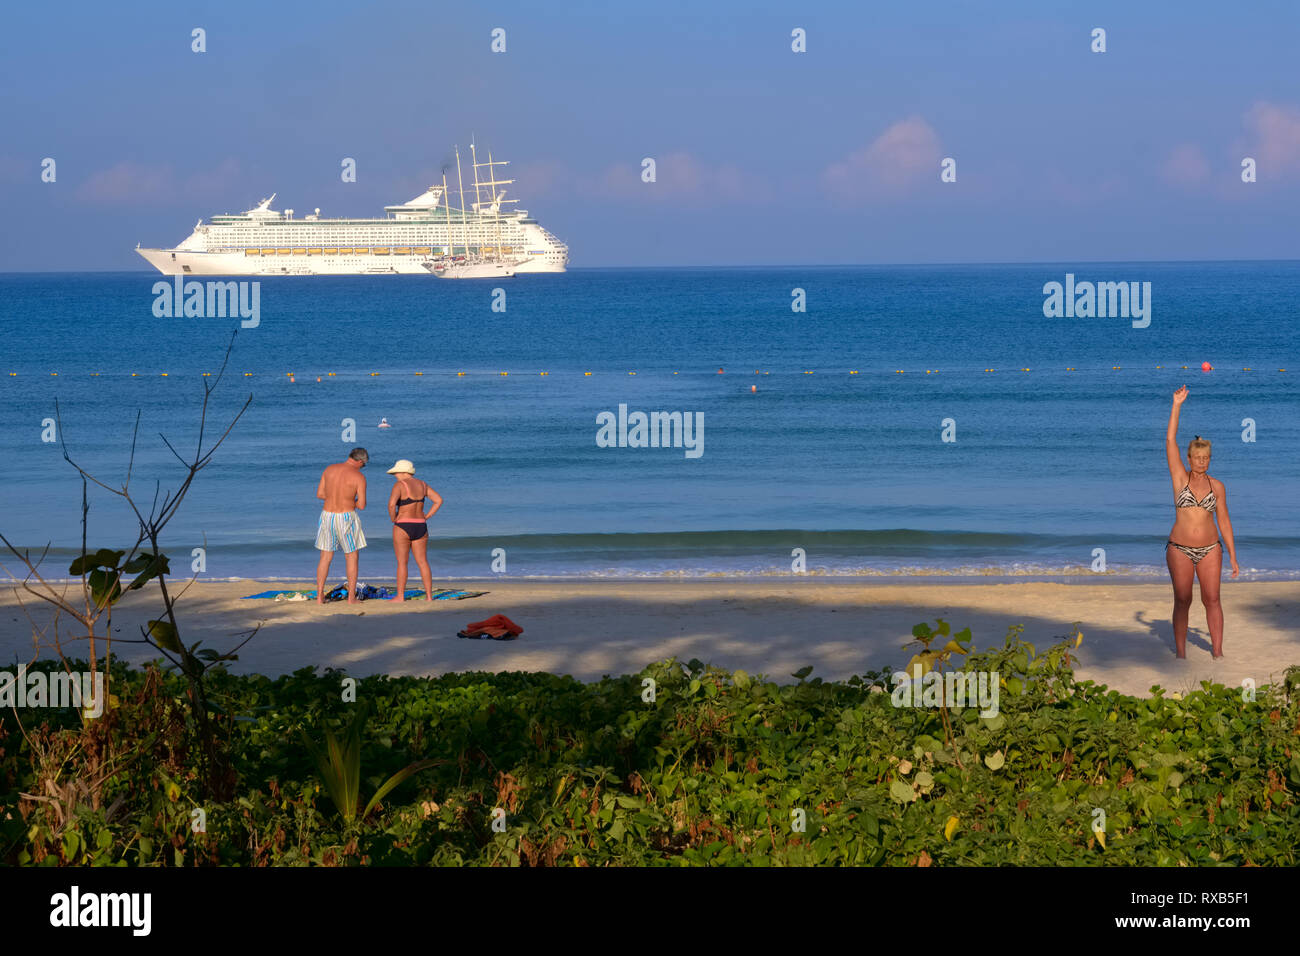 A Patong Beach, Phuket, Thailandia, una donna (r) sta facendo esercizi leggeri, con un turista giovane e una nave da crociera in background Foto Stock